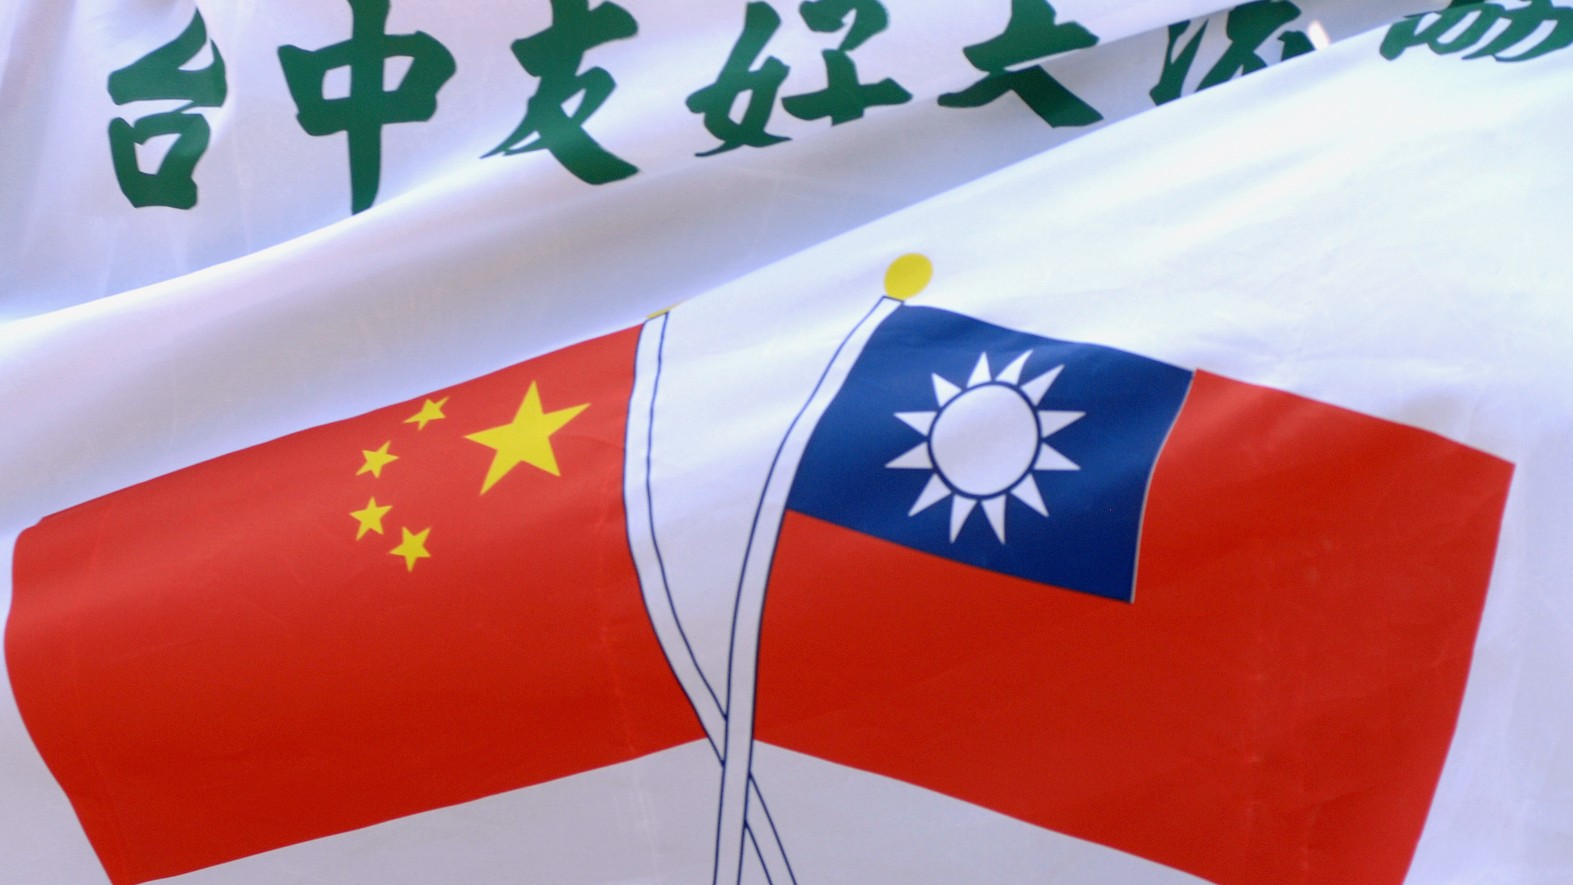 ¿Qué pasa entre China y Taiwán? ¿Son parte de un mismo país?
¿Cómo es su historia y relación?